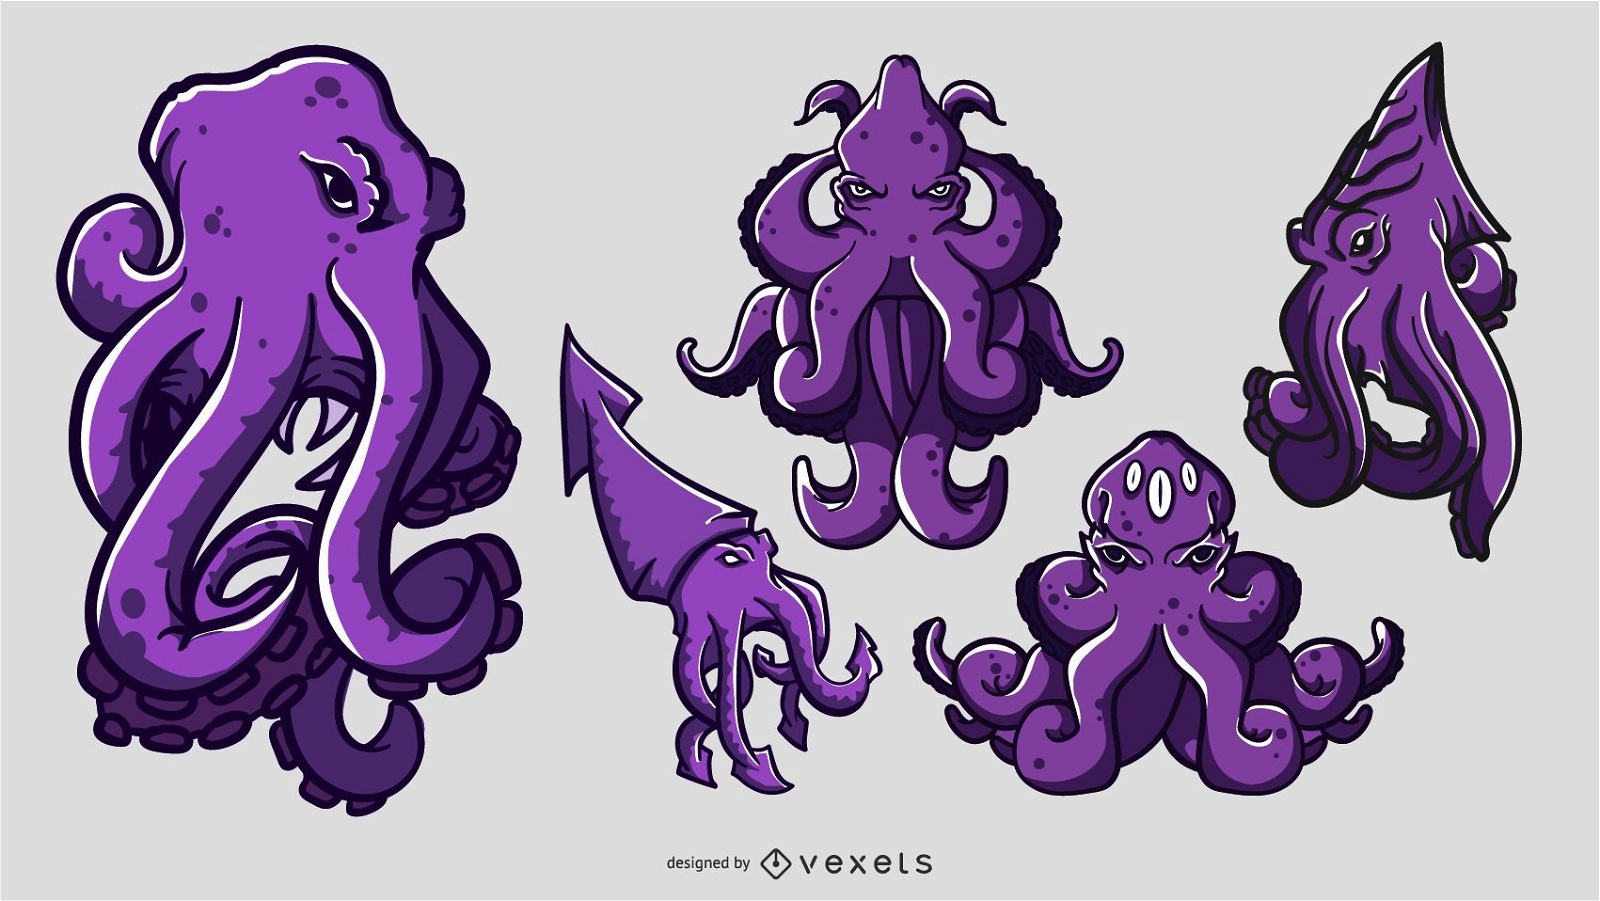 Descarga Vector De Conjunto De Ilustración De Dibujos Animados De Kraken